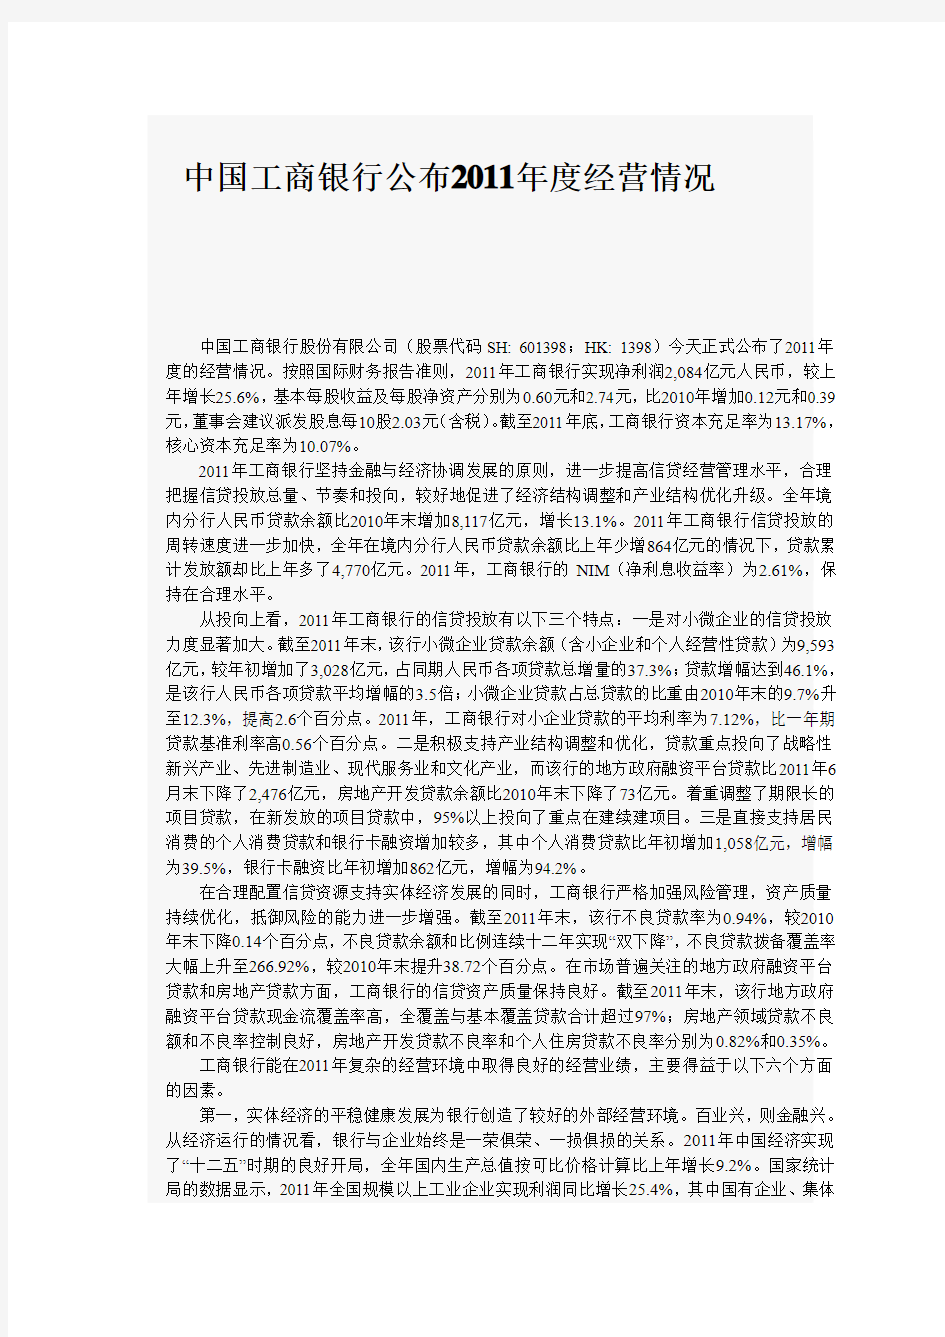 中国工商银行公布2011年度经营情况